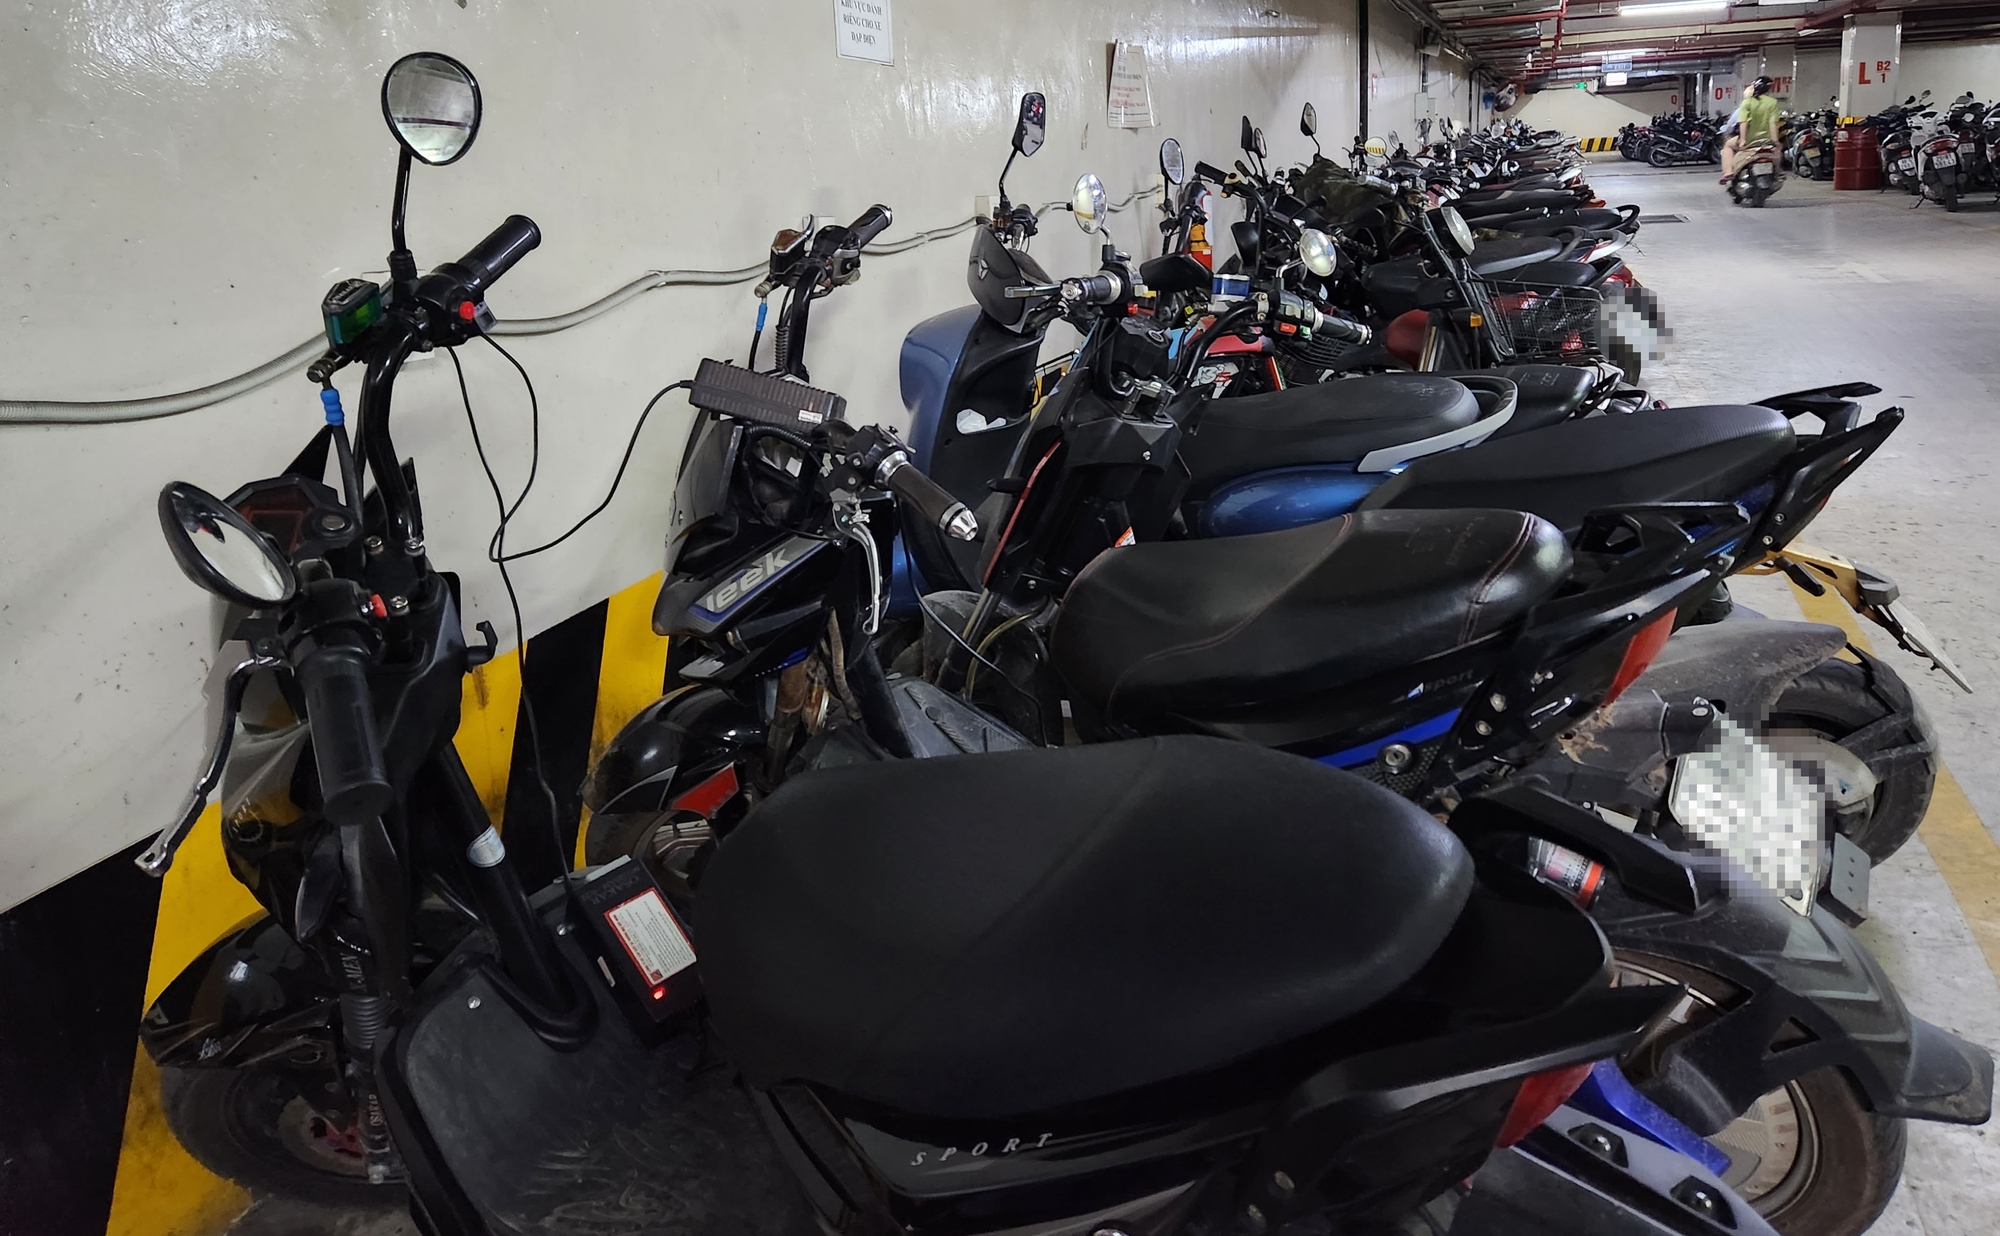 Hà Nội: Quận Thanh Xuân yêu cầu không để xe máy, xe điện ở chung cư mini - Ảnh 2.